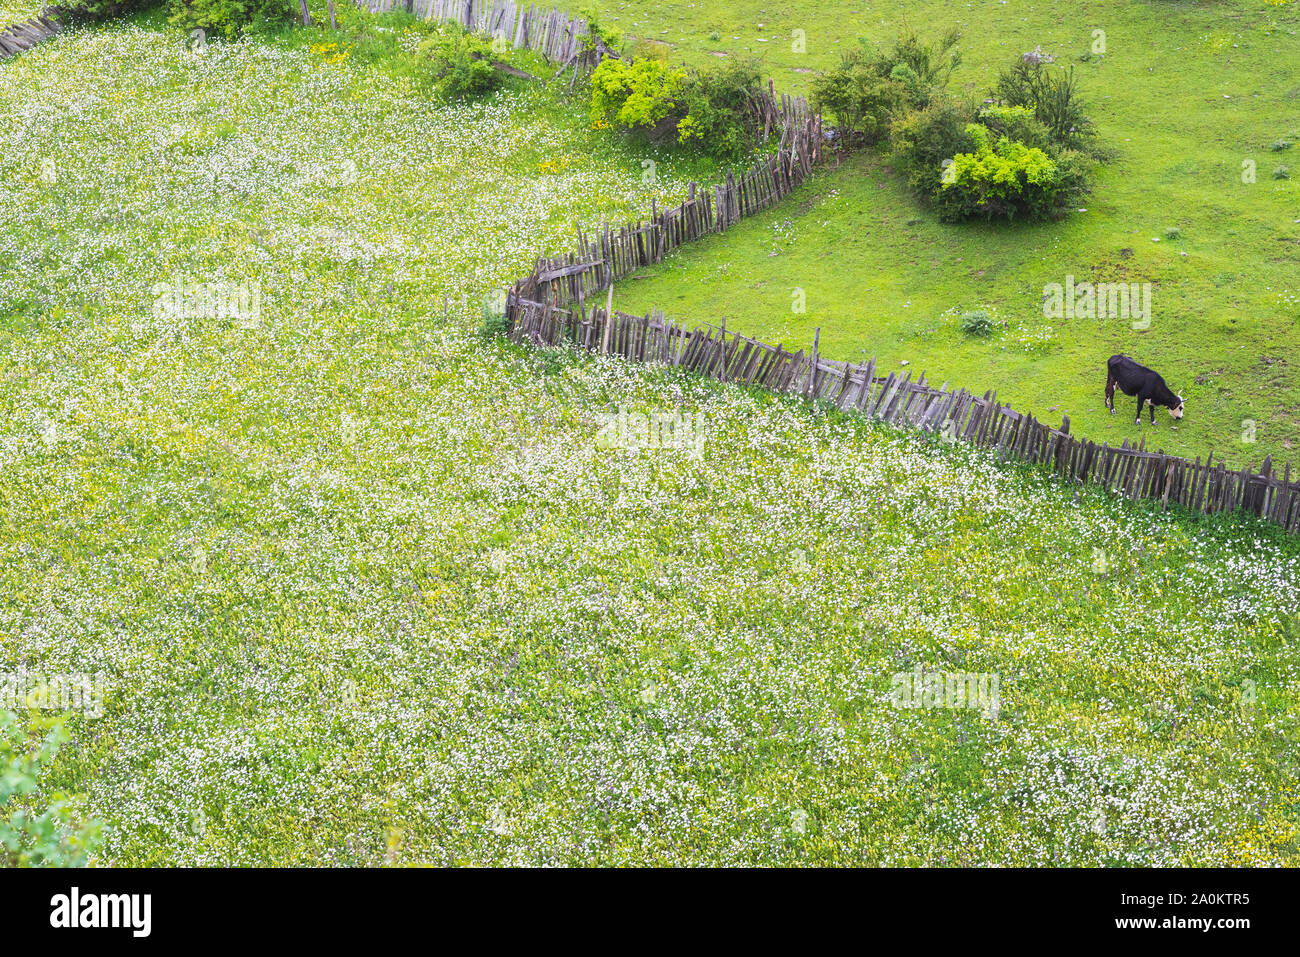 Campo di fiori selvatici, soprattutto chamomiles, una vecchia palizzata in legno e una mucca al pascolo. Posizione: Mestia, Svaneti, Georgia. Foto Stock